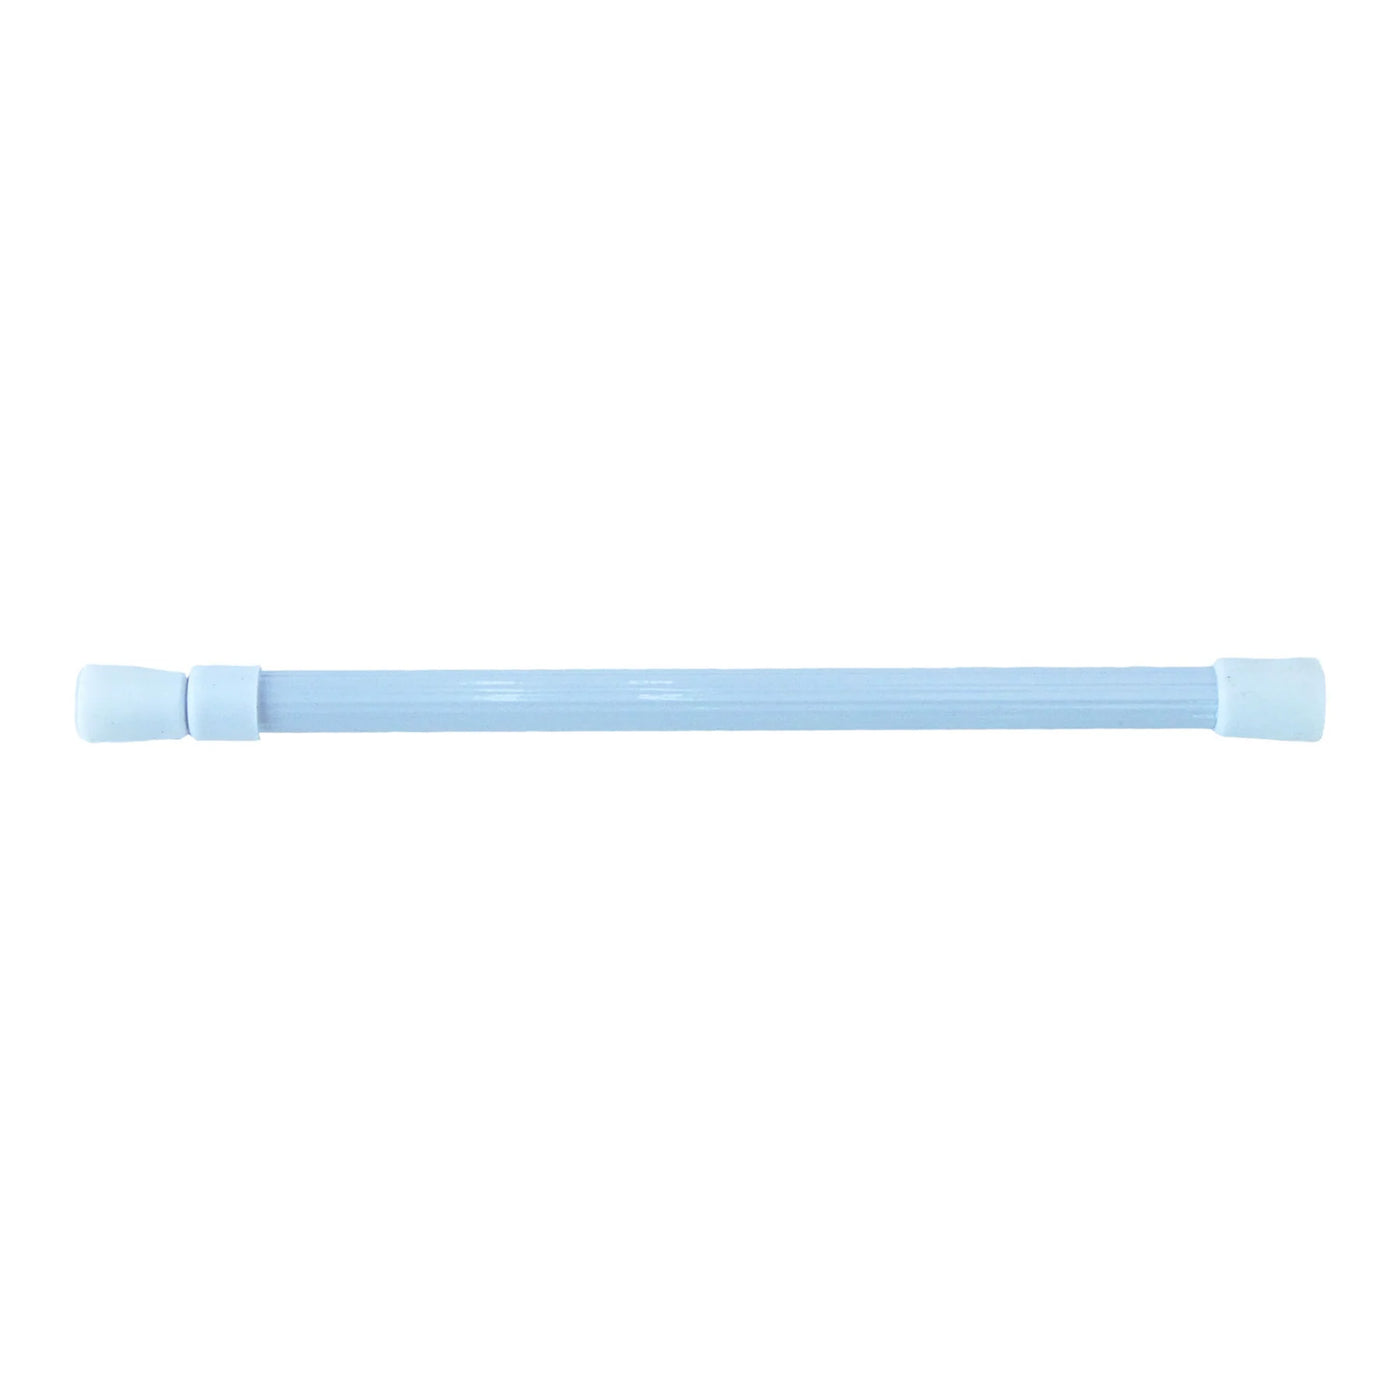 barkeeper® Aluminium Medium (M) 26-44cm white • Pack of 2 • Tension rod